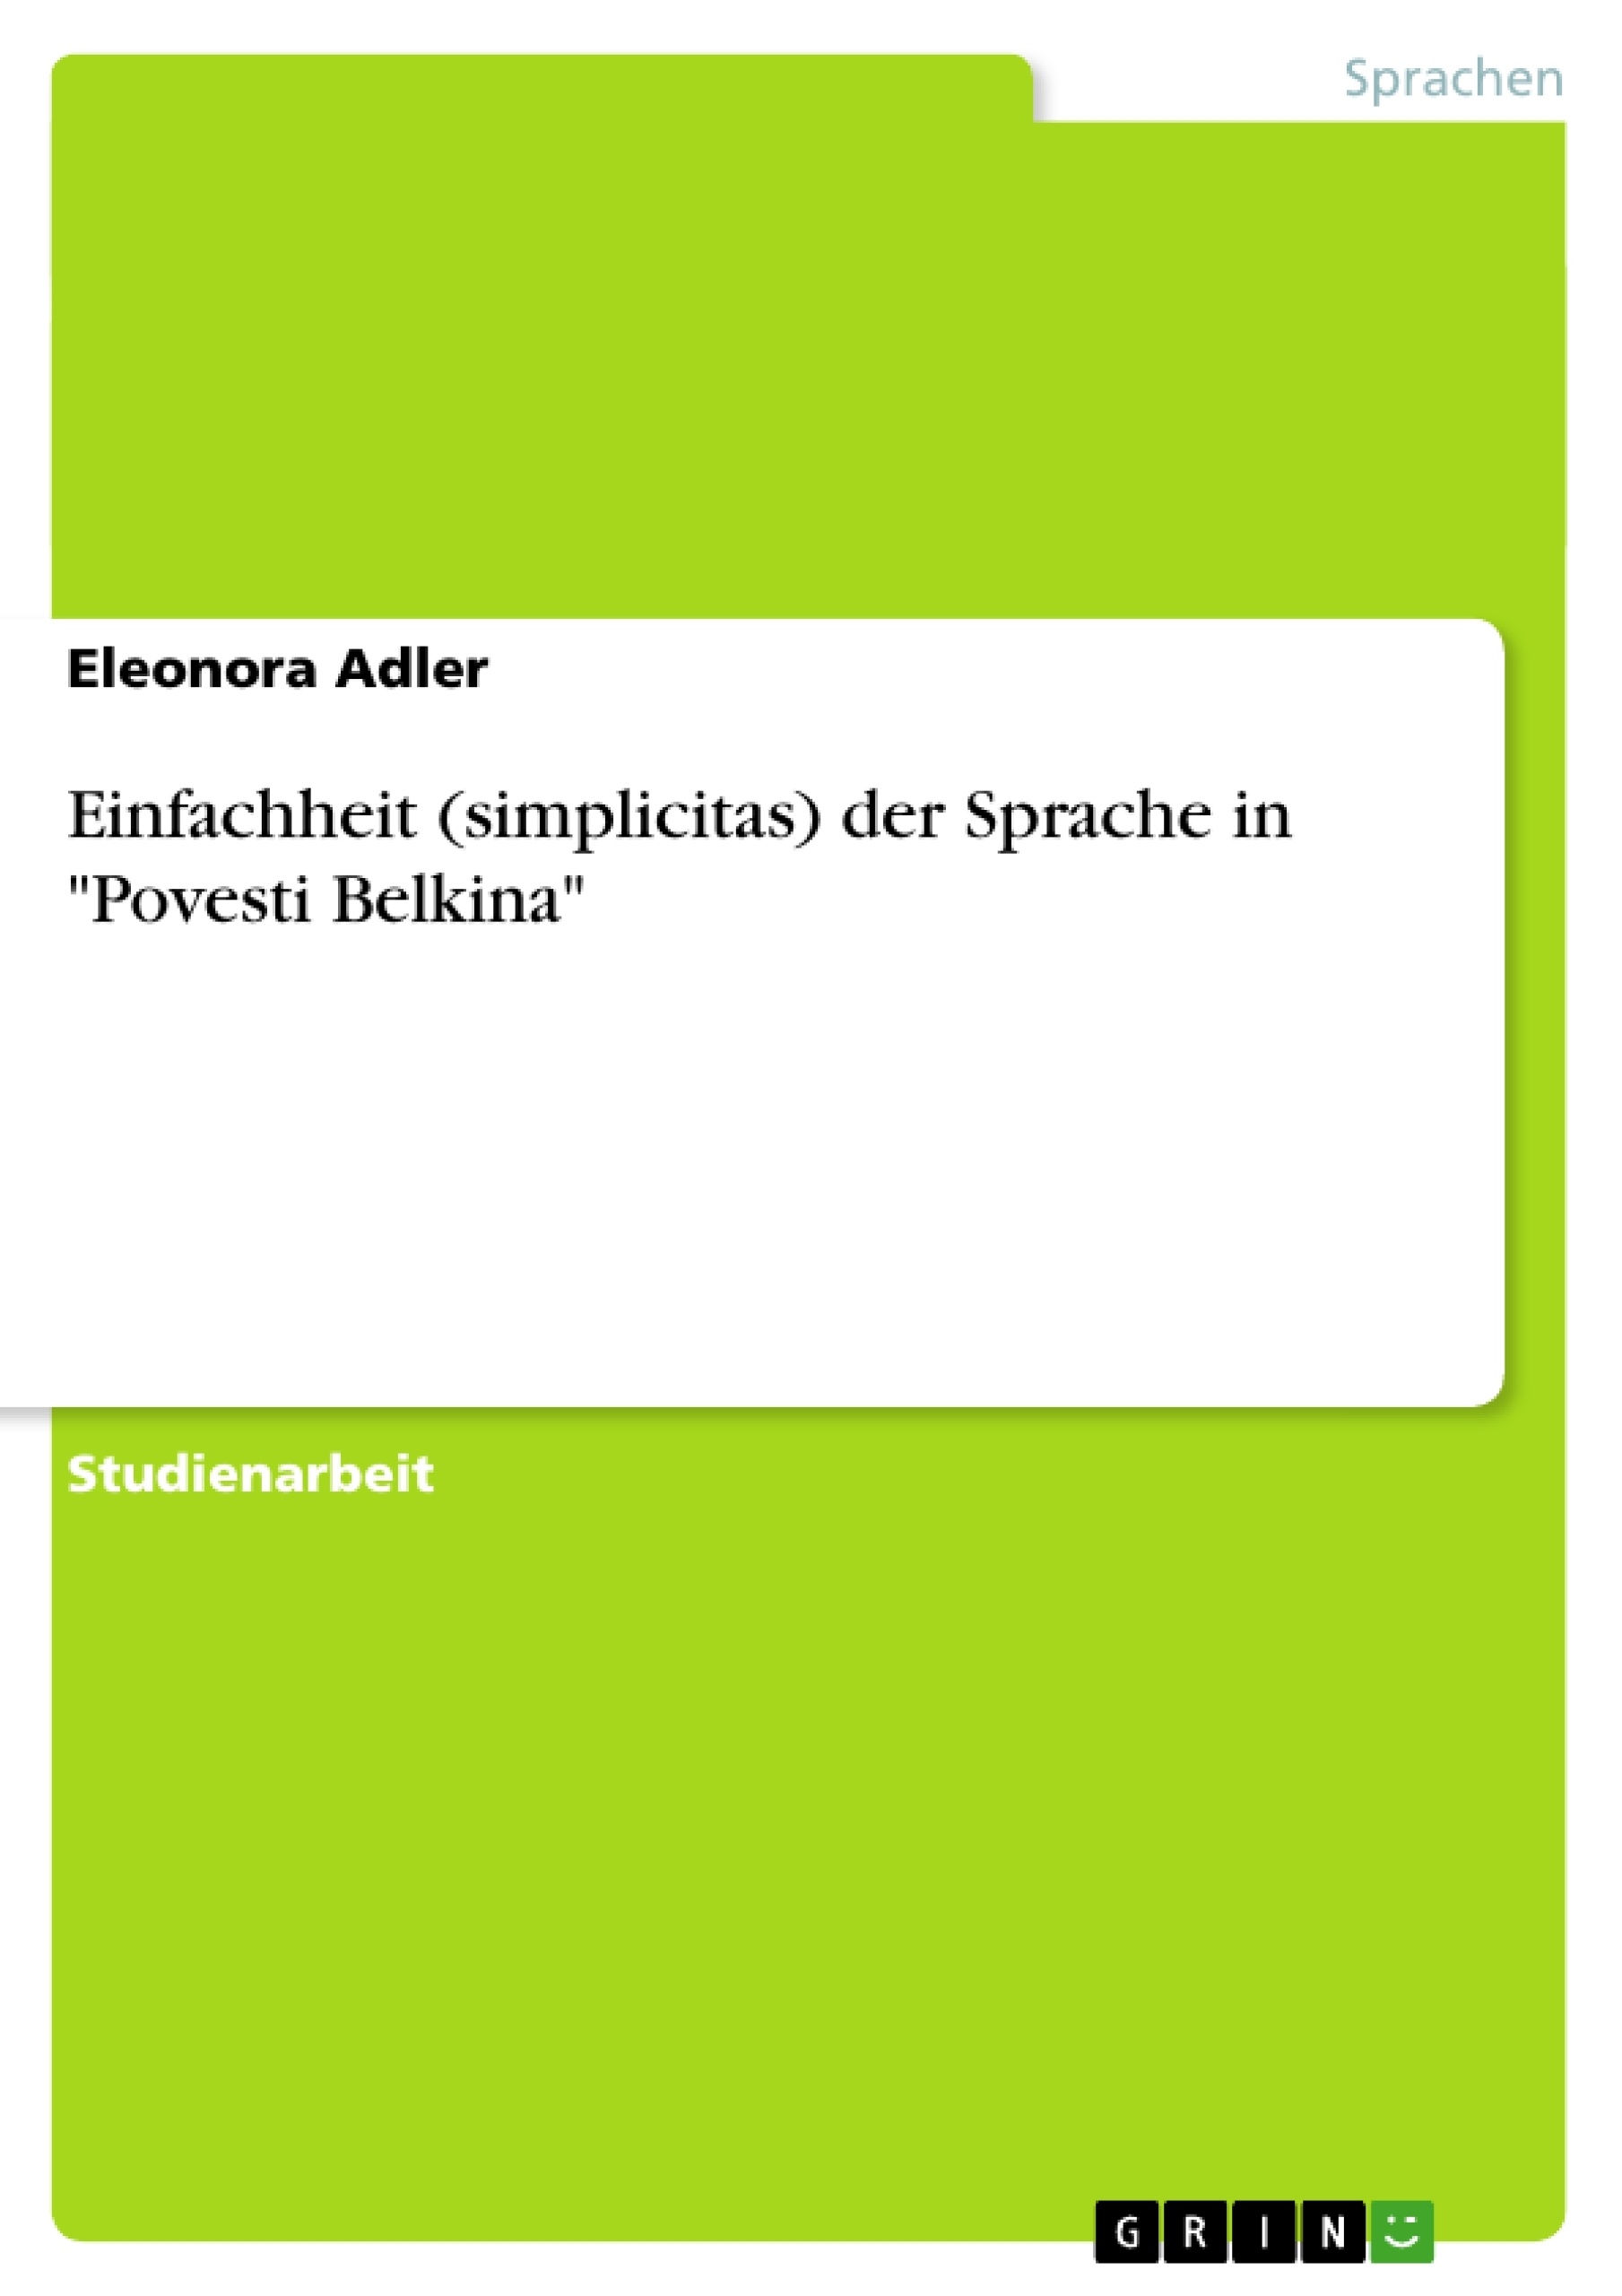 Título:  Einfachheit (simplicitas)  der Sprache in "Povesti Belkina"